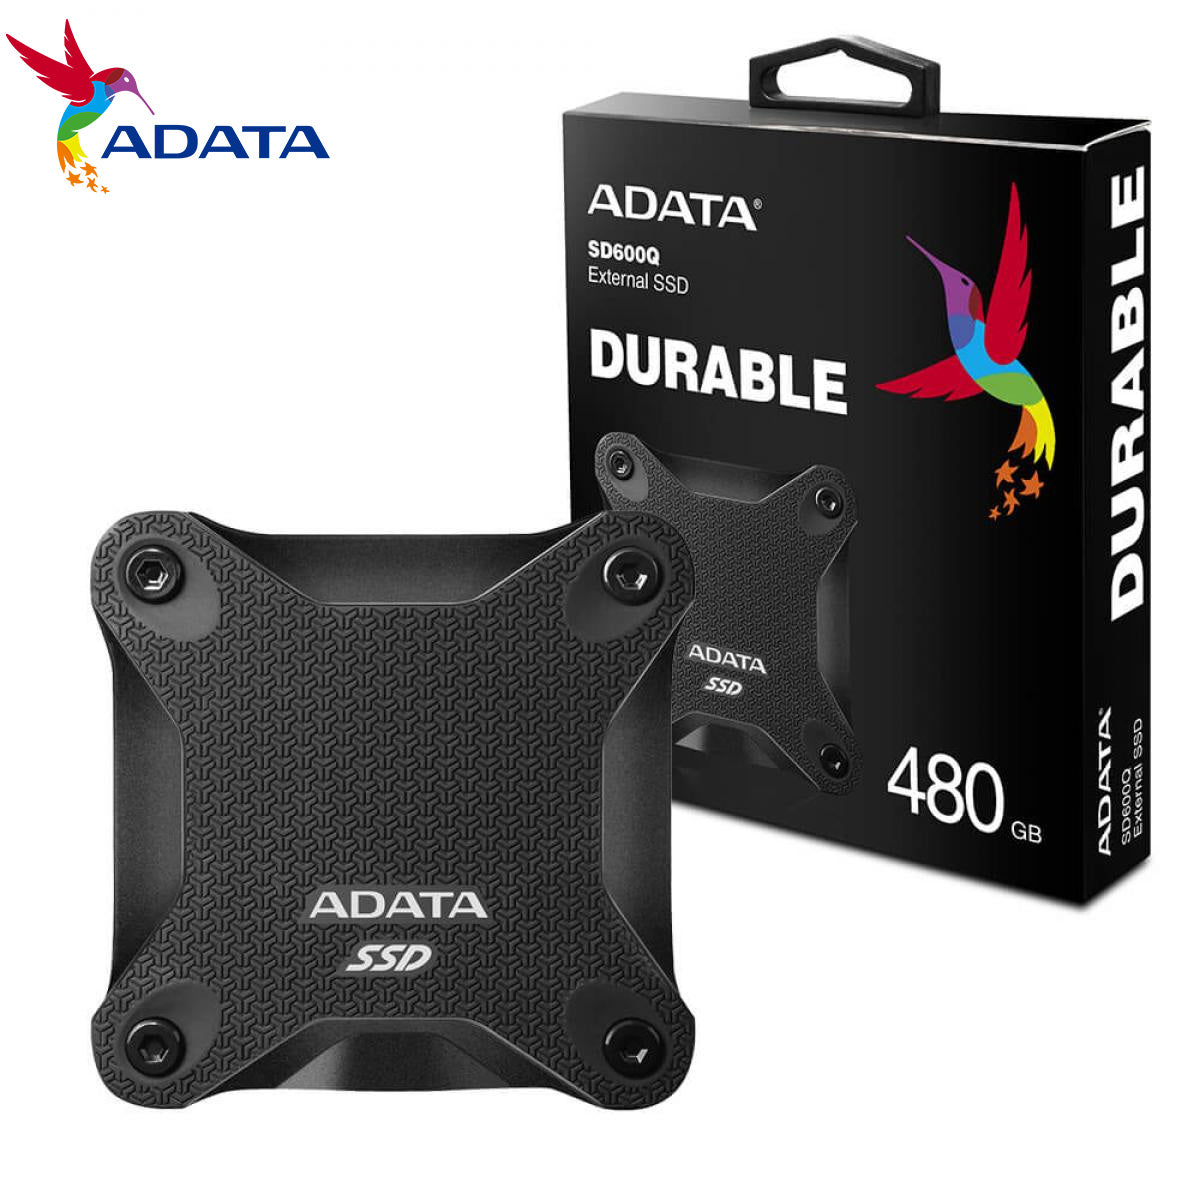 ADATA SD600Q 480GB BLACK COLOR BOX